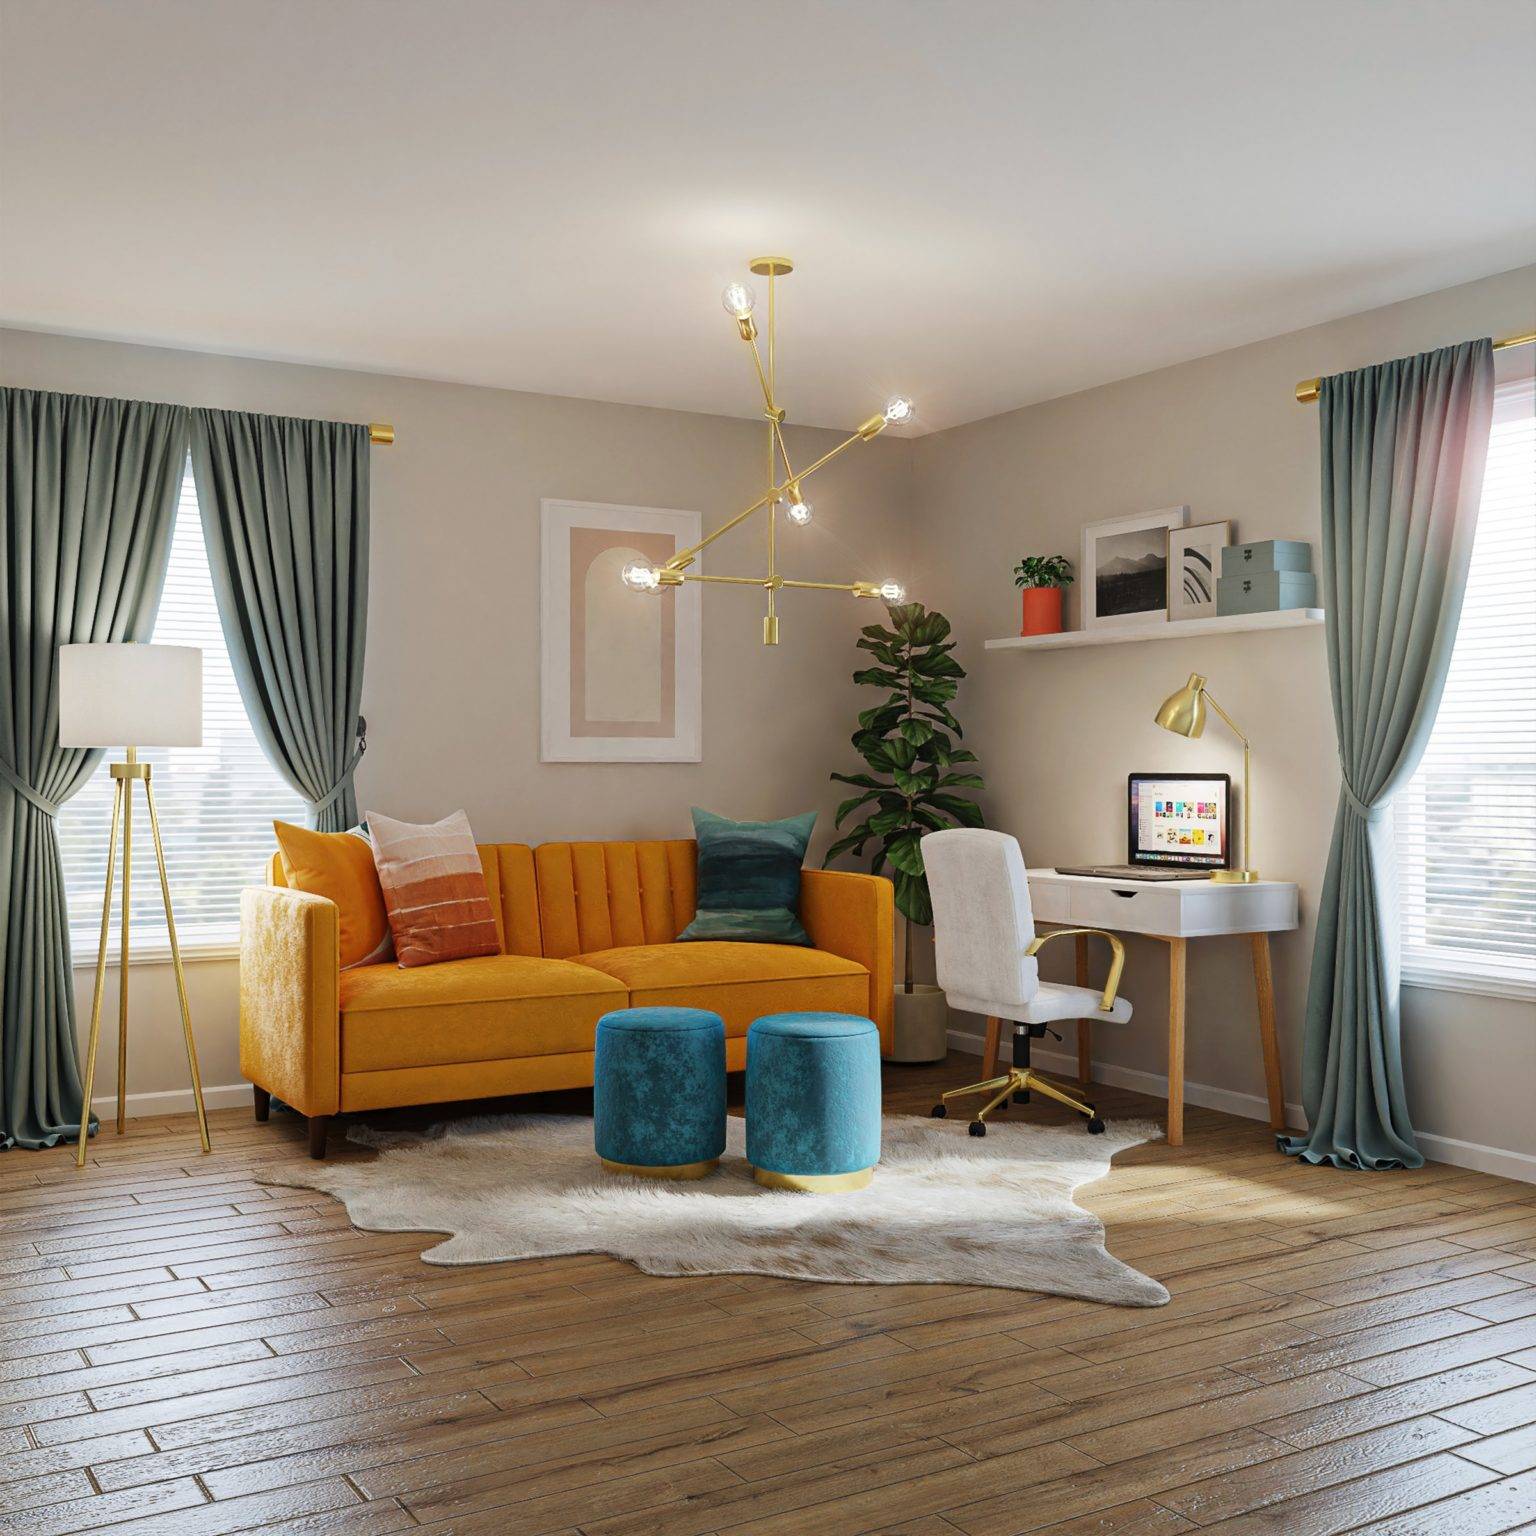 Ghế sofa màu vàng cam trở thành điểm nhấn tươi mới trong không gian phòng khách màu trung tính chủ đạo.